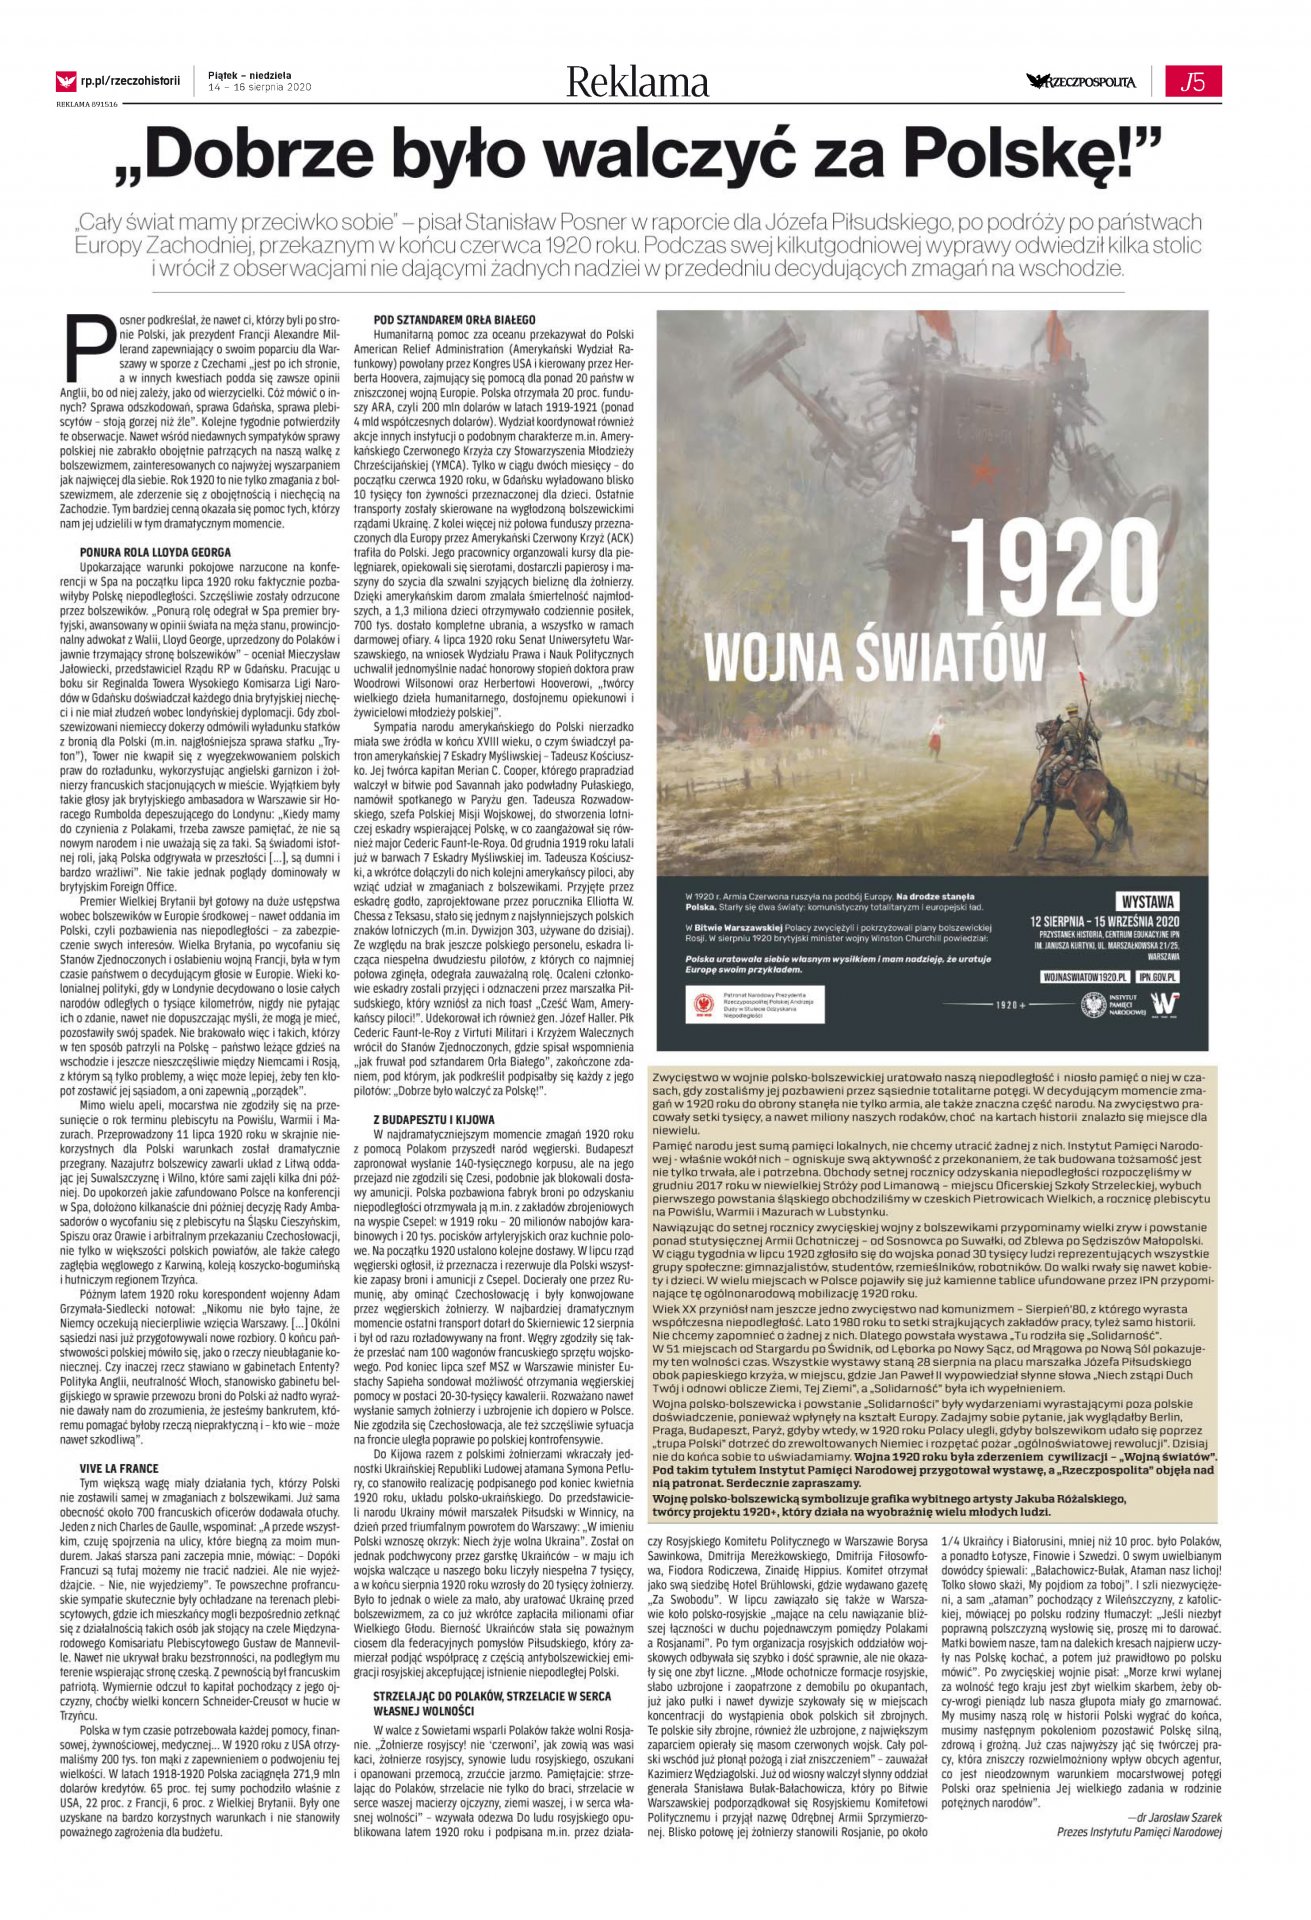 „Dobrze było walczyć za Polskę” – dodatek historyczny do „Rzeczpospolitej” z 14 sierpnia 2020 - okładka